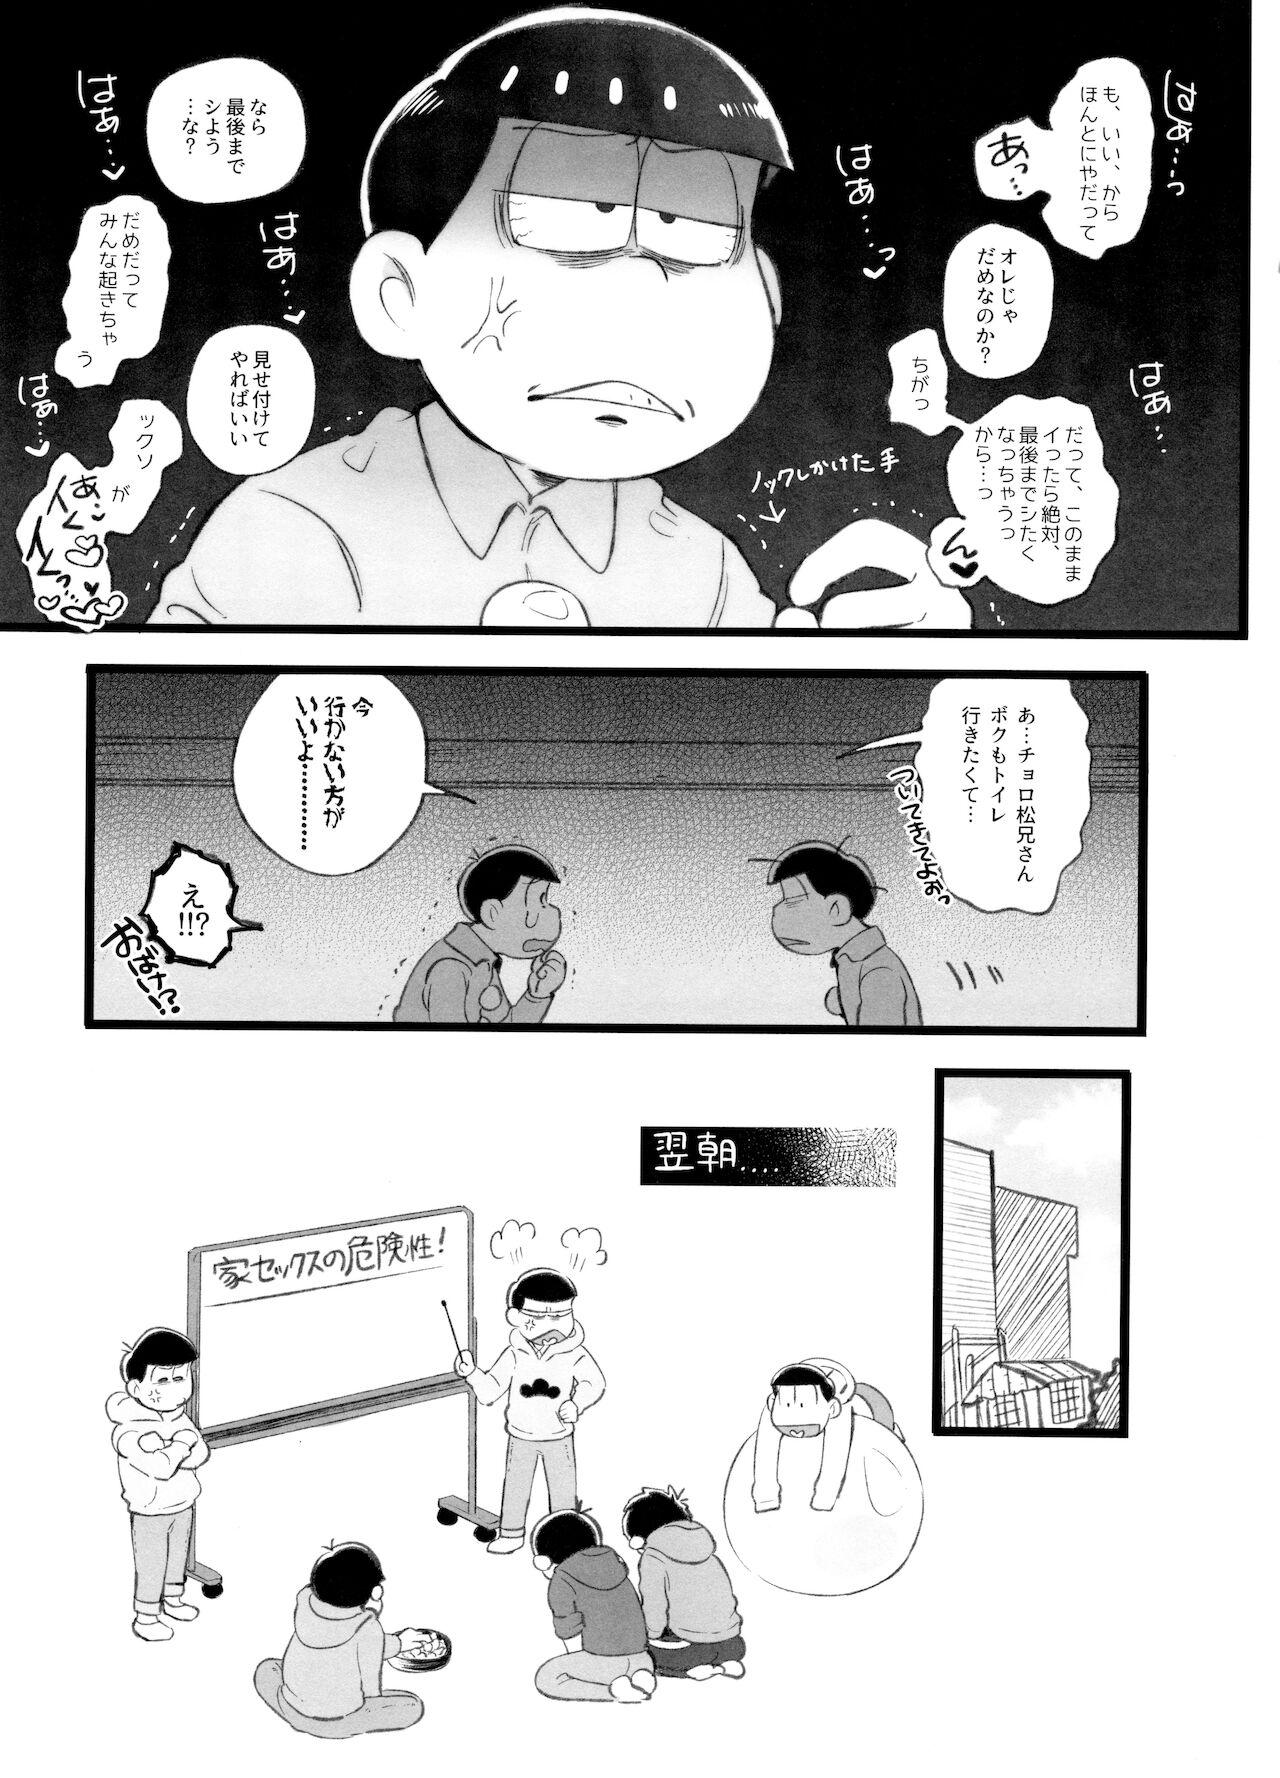 Kahou 10-ji Yon no Omake Hon + Andante no Koufukuron Gojitsu Manga 5